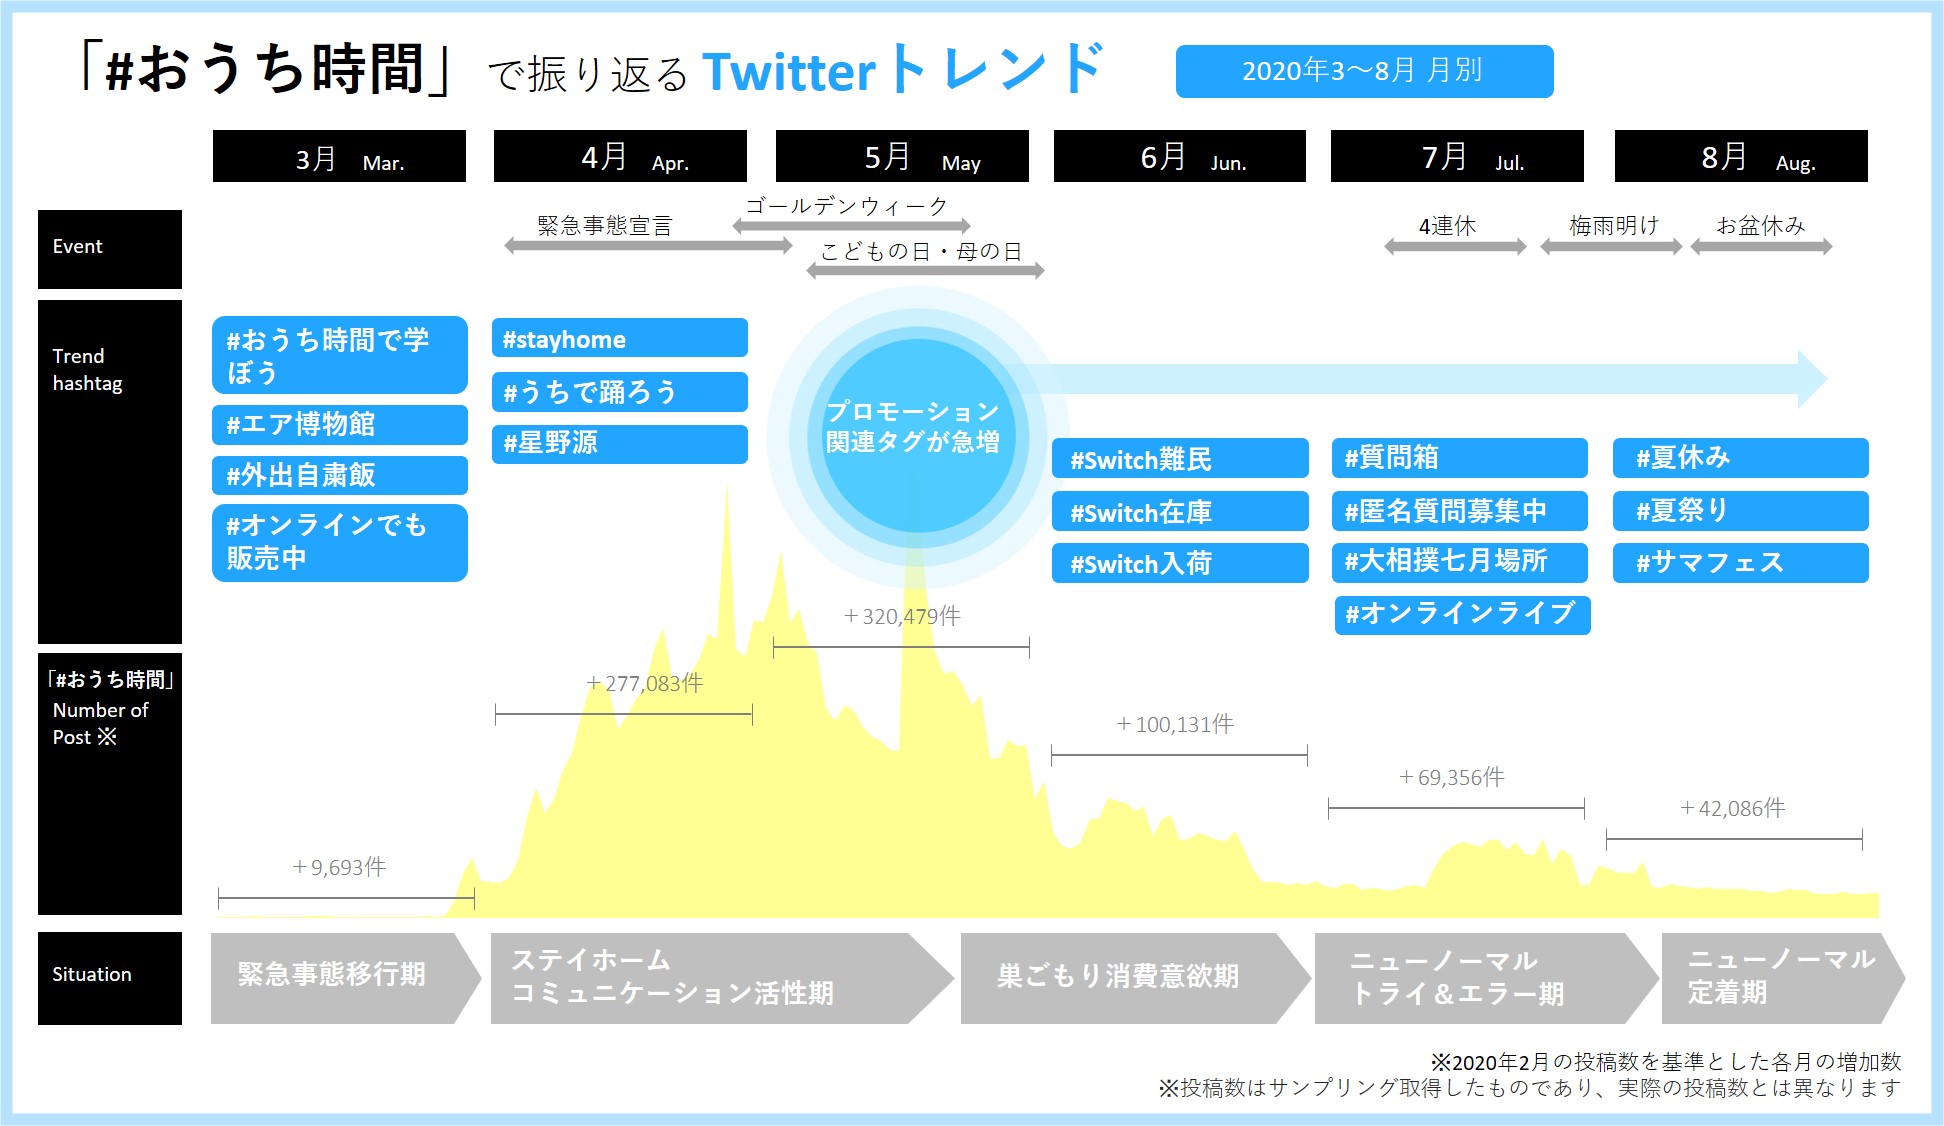 トレンダーズ、Twitterにおける「#おうち時間」投稿分析 【2020年3～8月 月別】